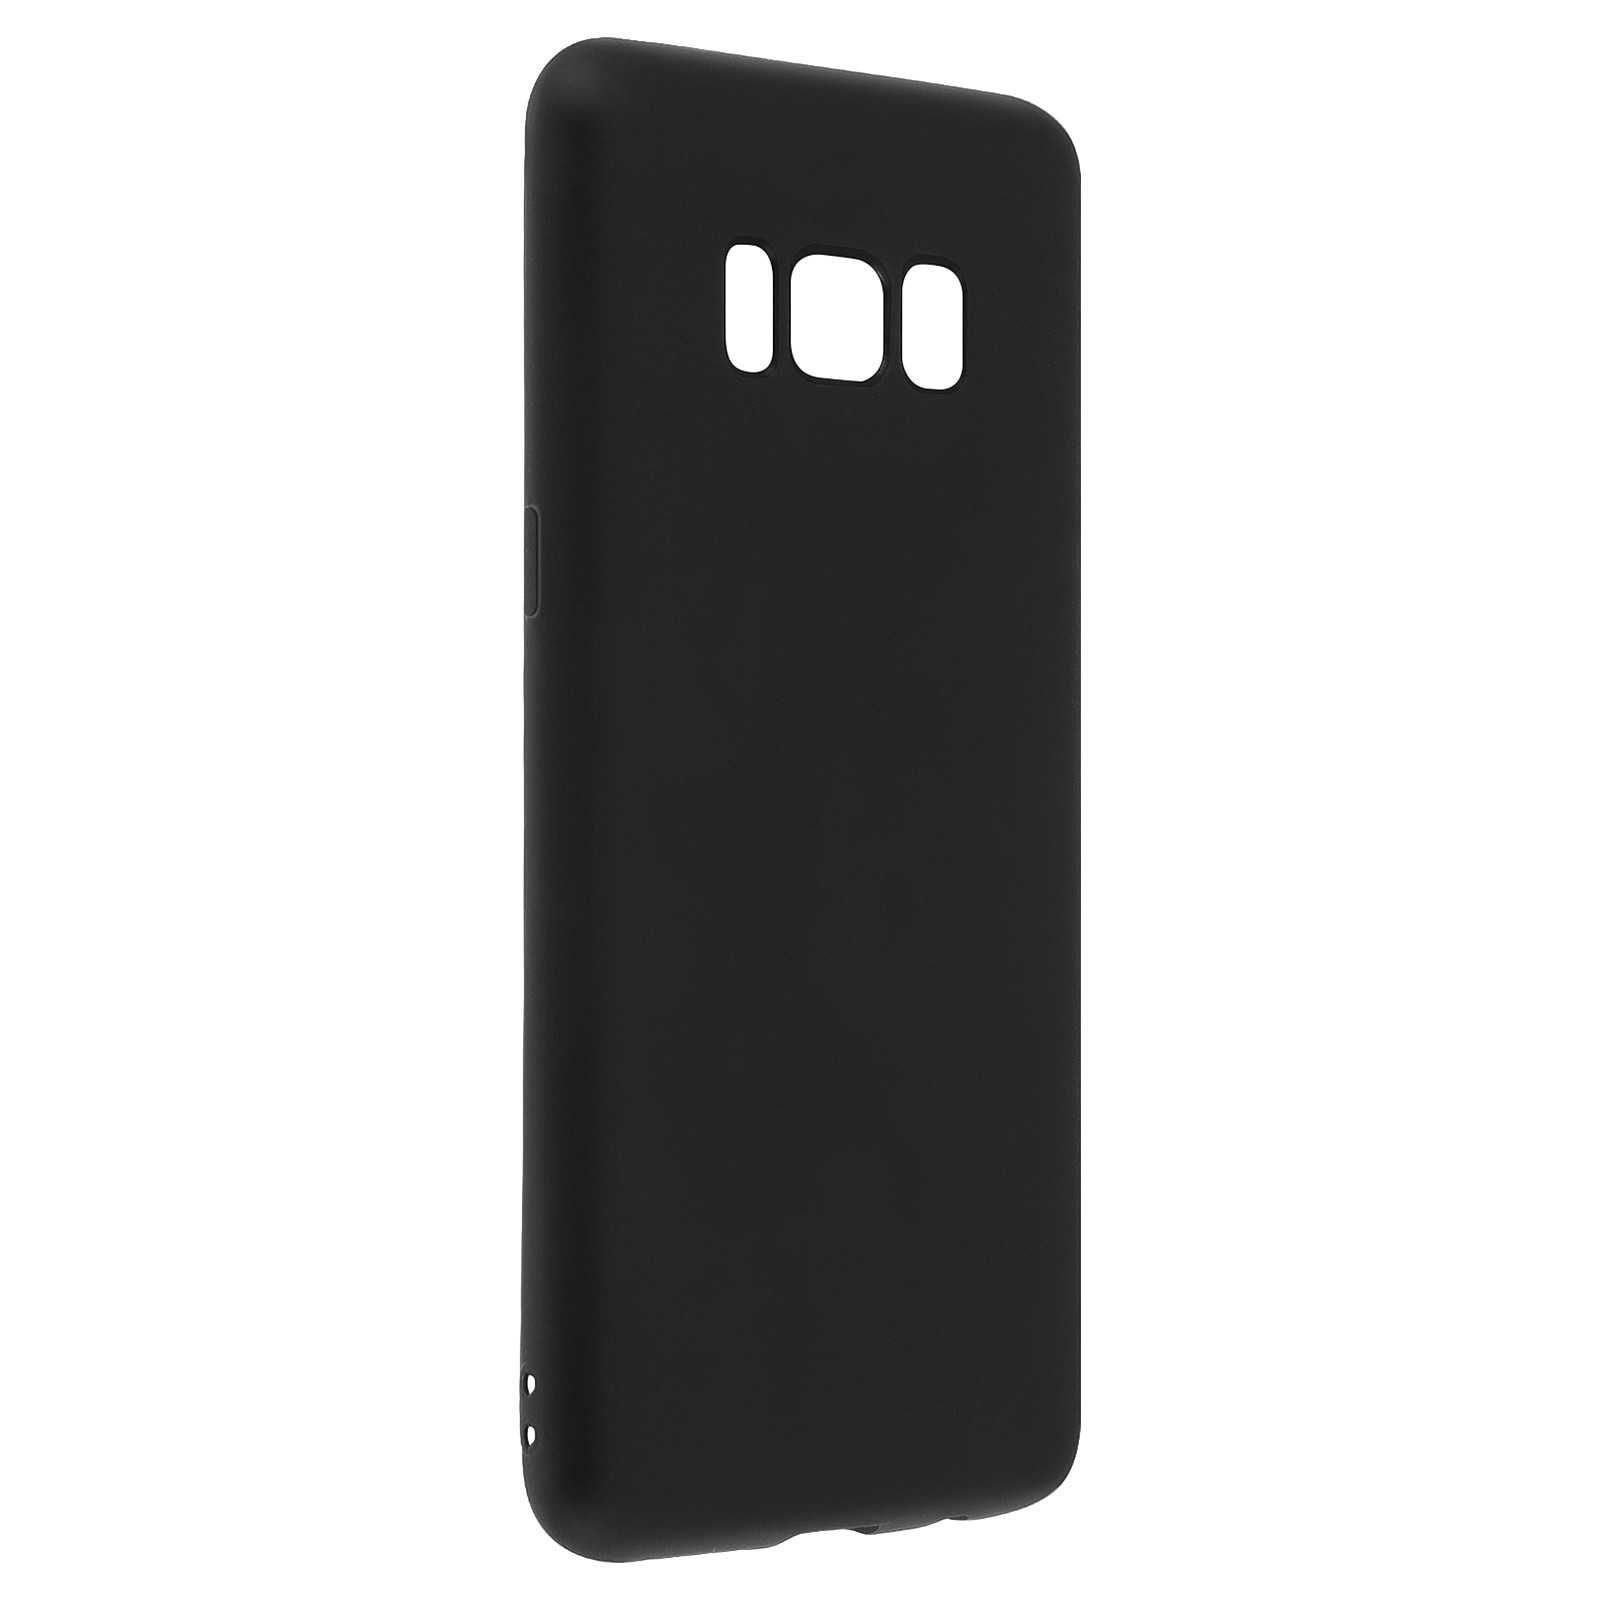 Avizar Coque Silicone Incassable Noir mate Samsung Galaxy S8 - Protection souple - Coque telephone Avizar